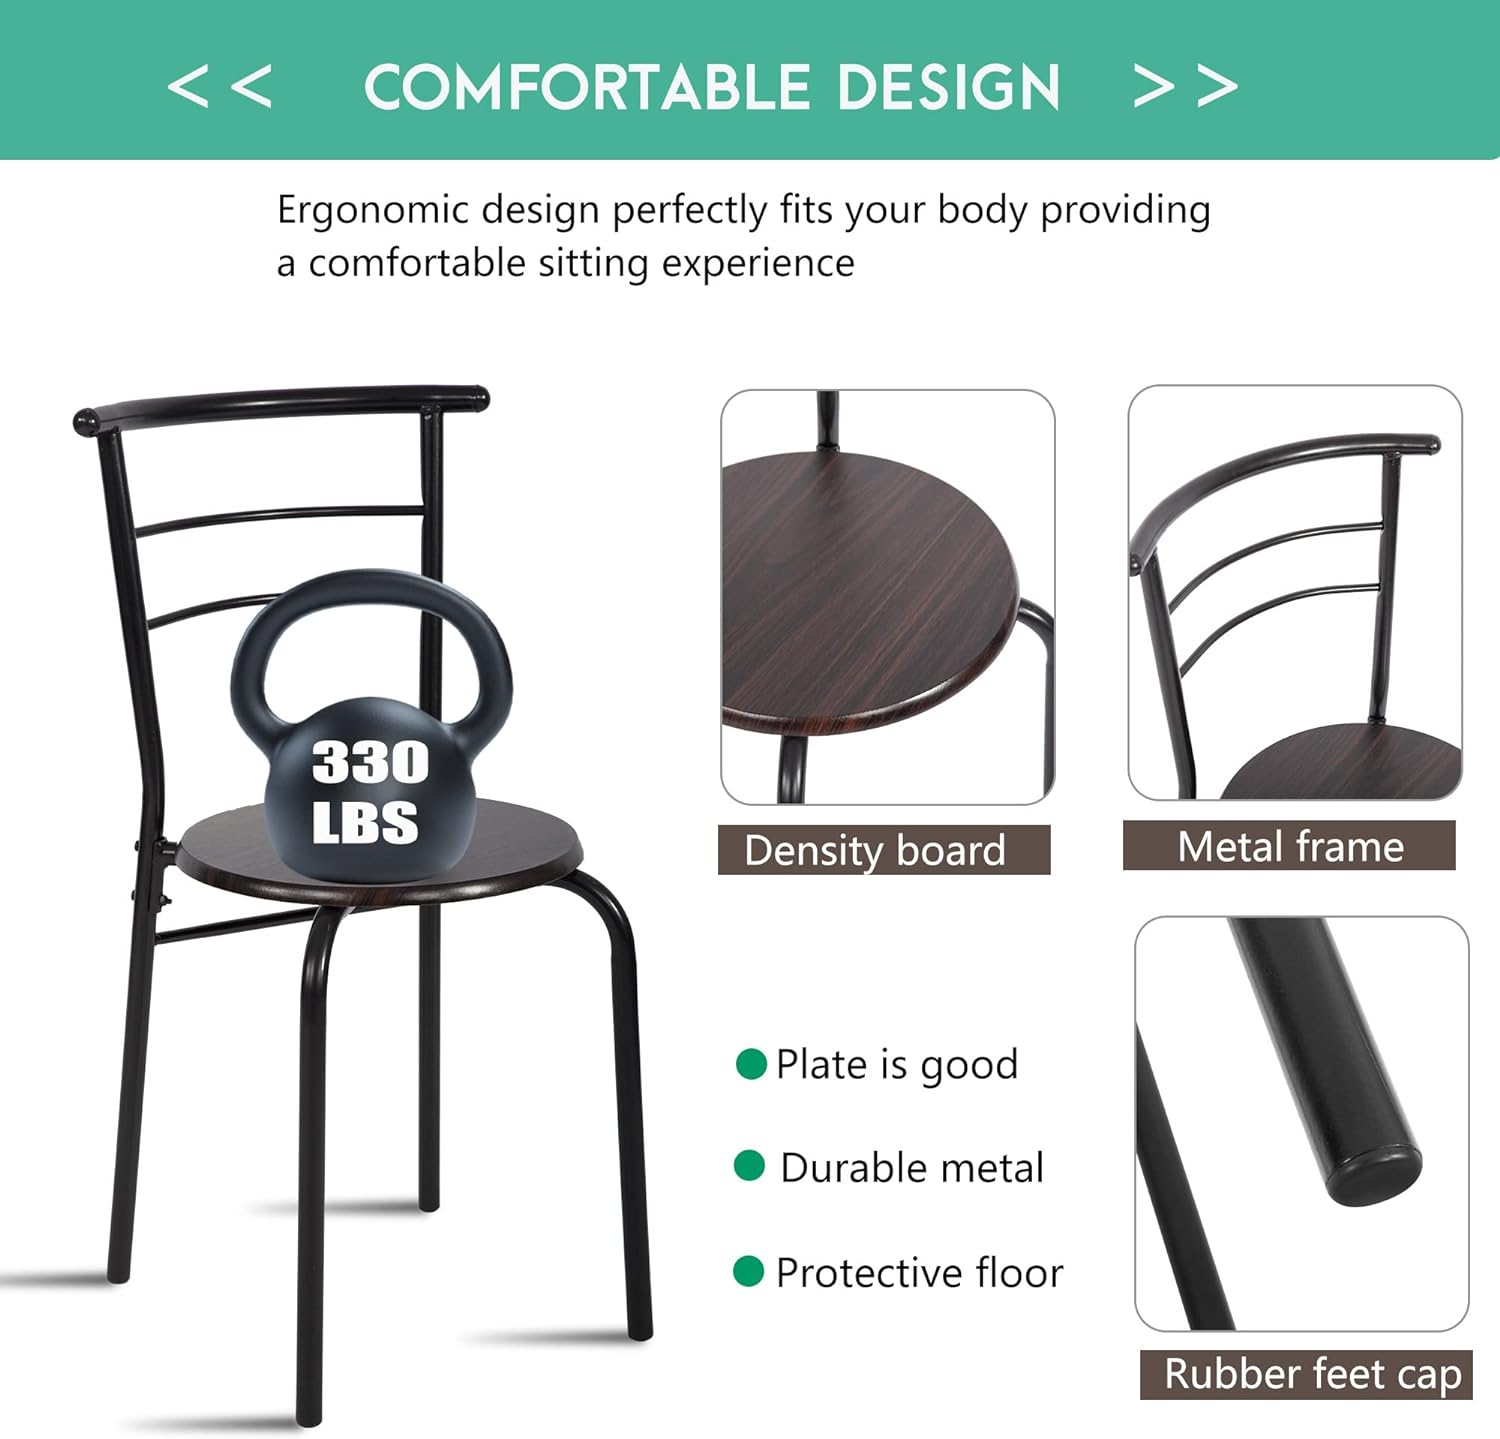 Juego de mesa redonda y silla de 3 piezas para cocina, comedor, bar, desayuno, marco de metal compacto espacial